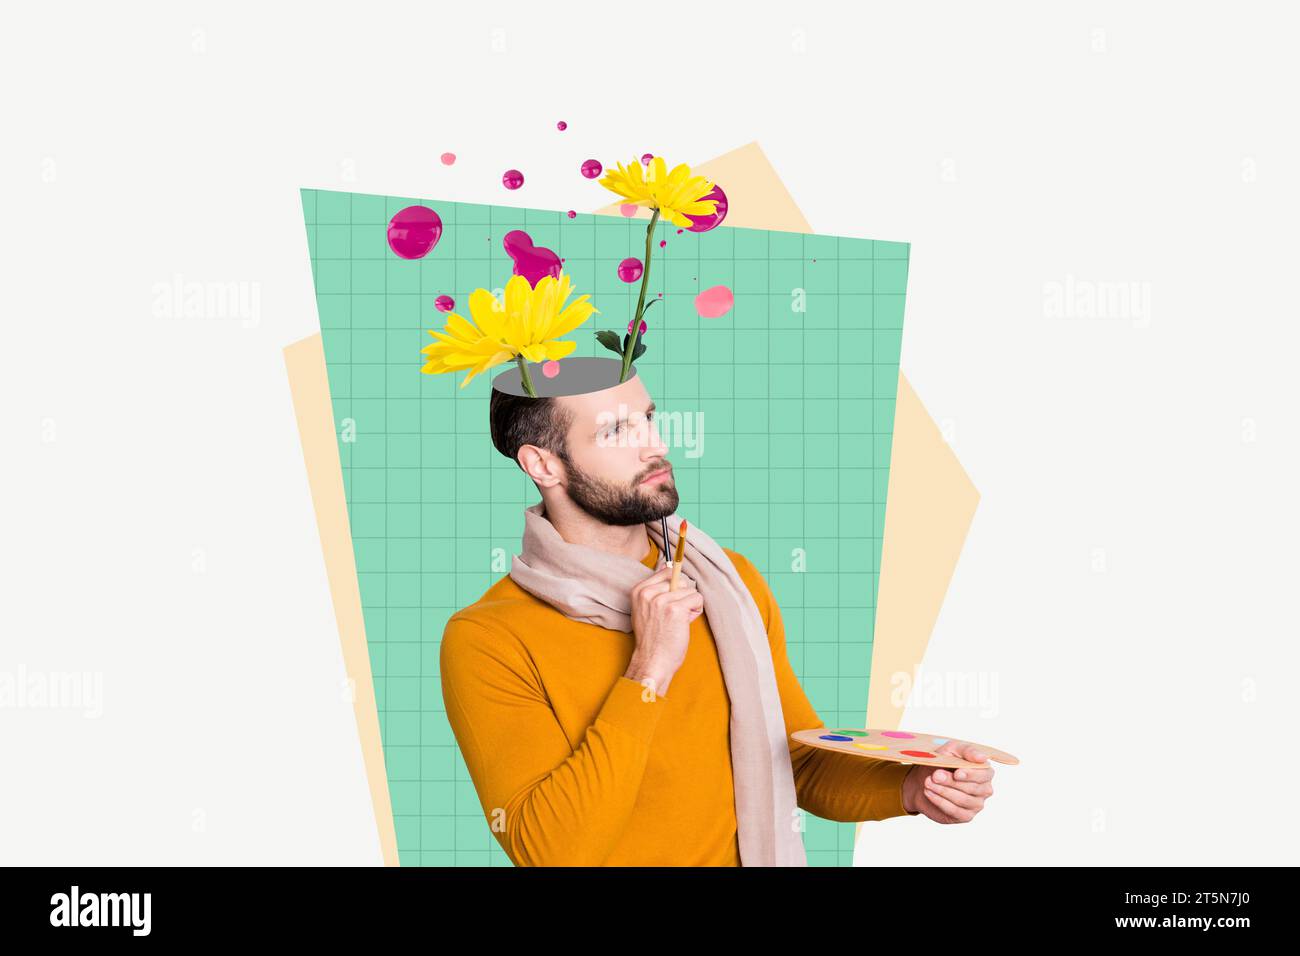 Collage de portrait d'artistes de gars de réflexion tenant la palette de pinceaux à l'air inspiré imagine dessiner des fleurs isolées sur fond vert Banque D'Images